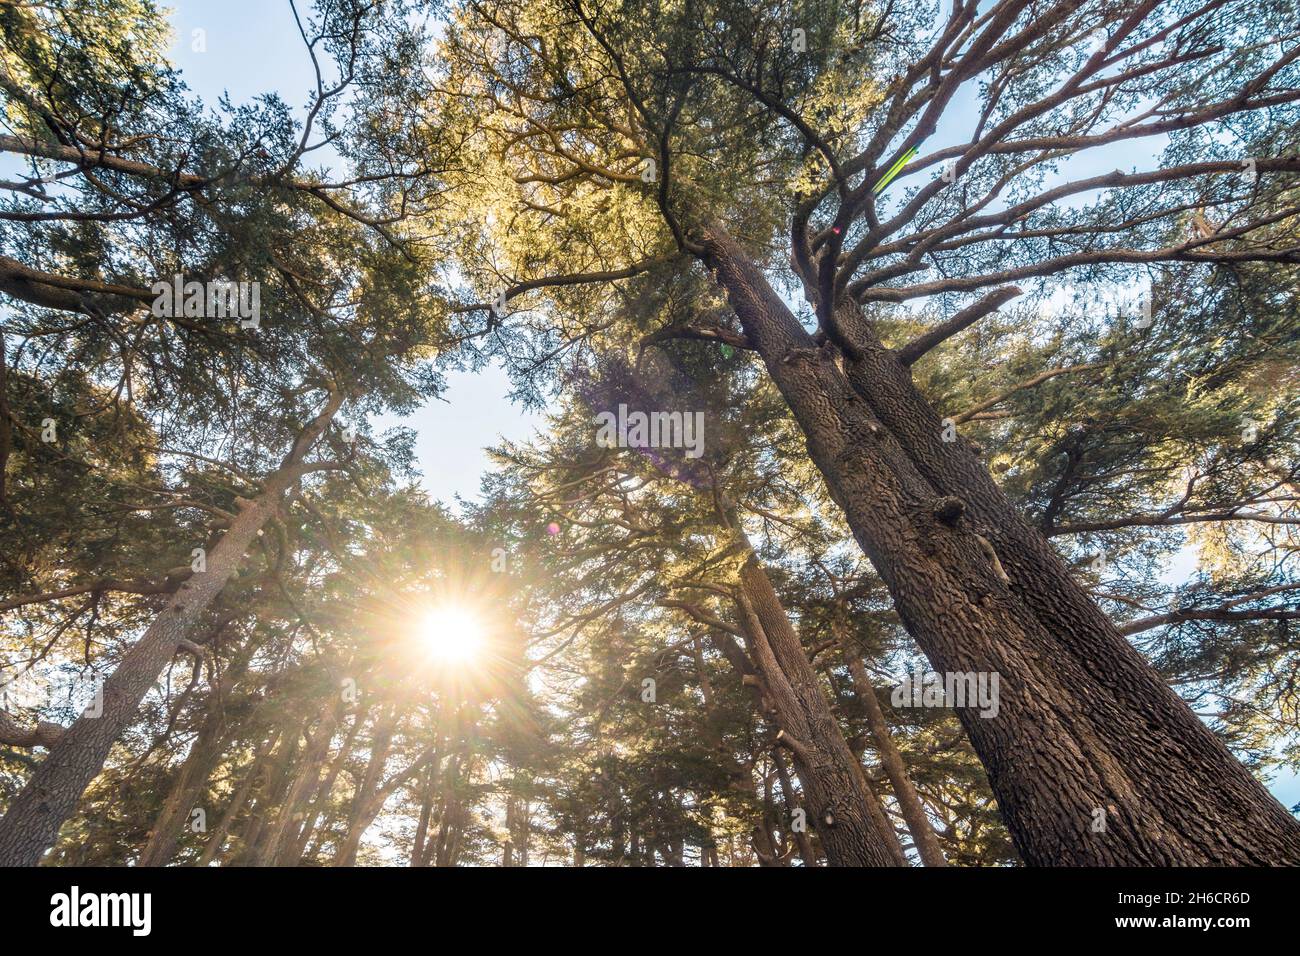 Vue de dessous des arbres de Cedrus libani dans la forêt des Cedars de Dieu avec des rayons du soleil, Arz, Bsharri, Liban Banque D'Images